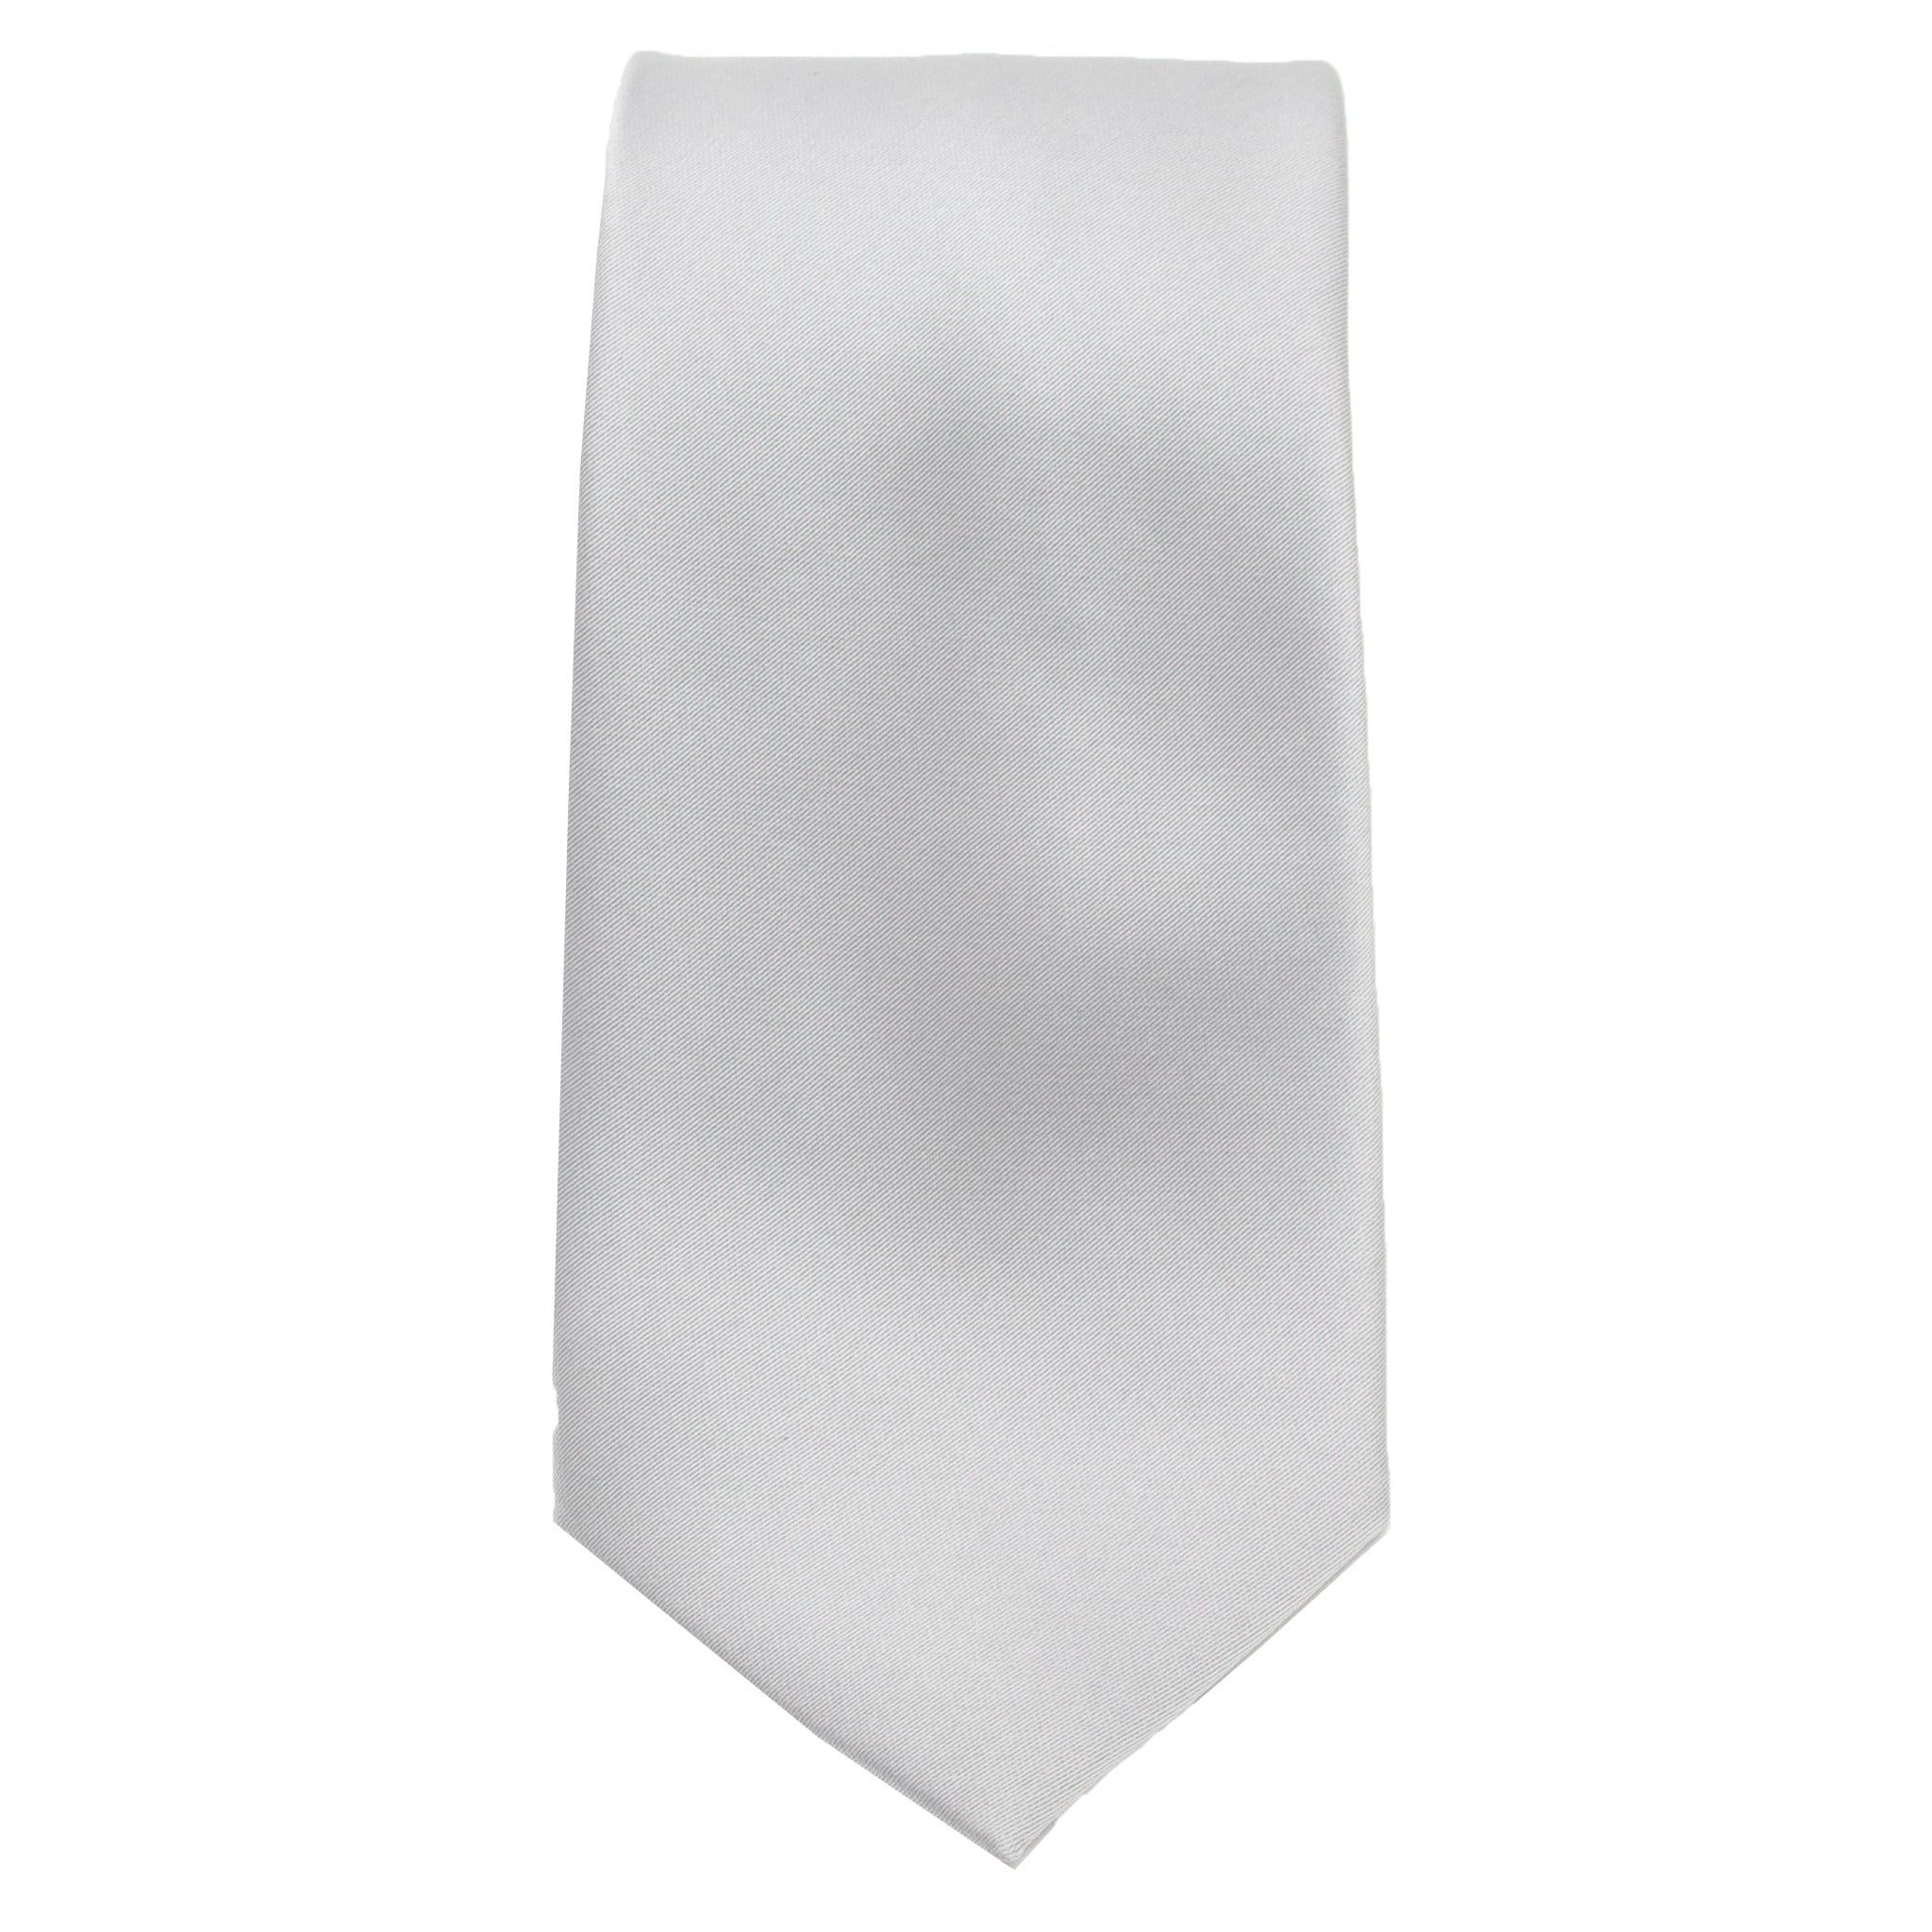 Silver Satin Tie